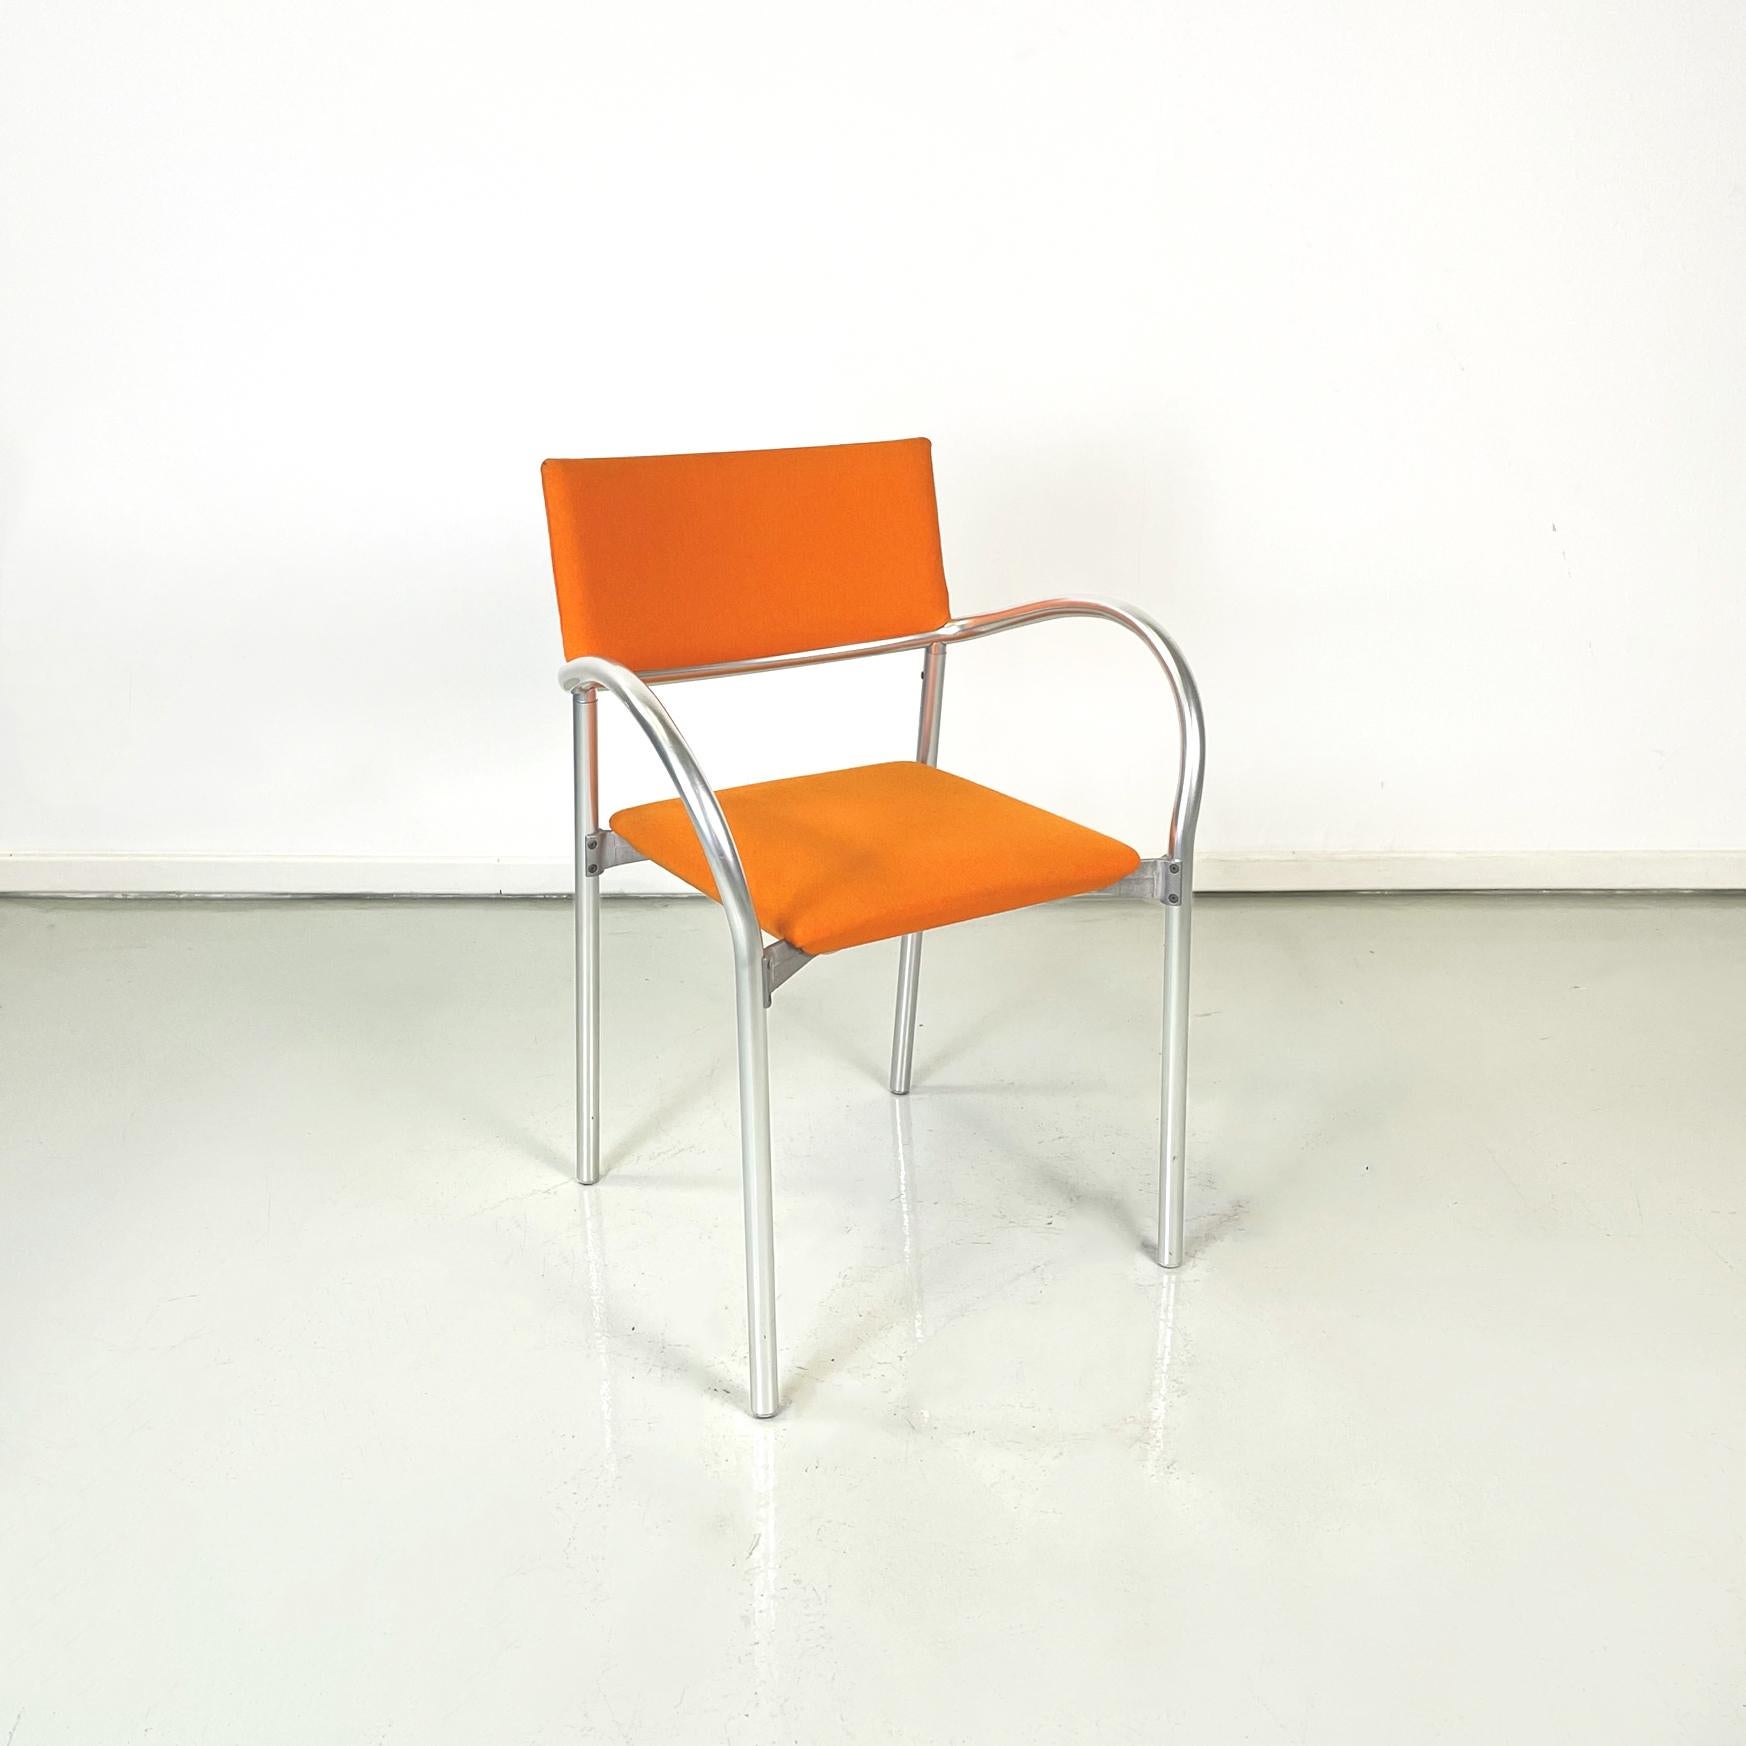 Chaises modernes italiennes en tissu orange mod. Breeze de Carlo Bartoli pour Segis, années 1980
Paire de chaises mod. Breeze avec structure tubulaire en aluminium mat. L'assise et le dossier sont paddés et recouverts de tissu orange. Accoudoirs